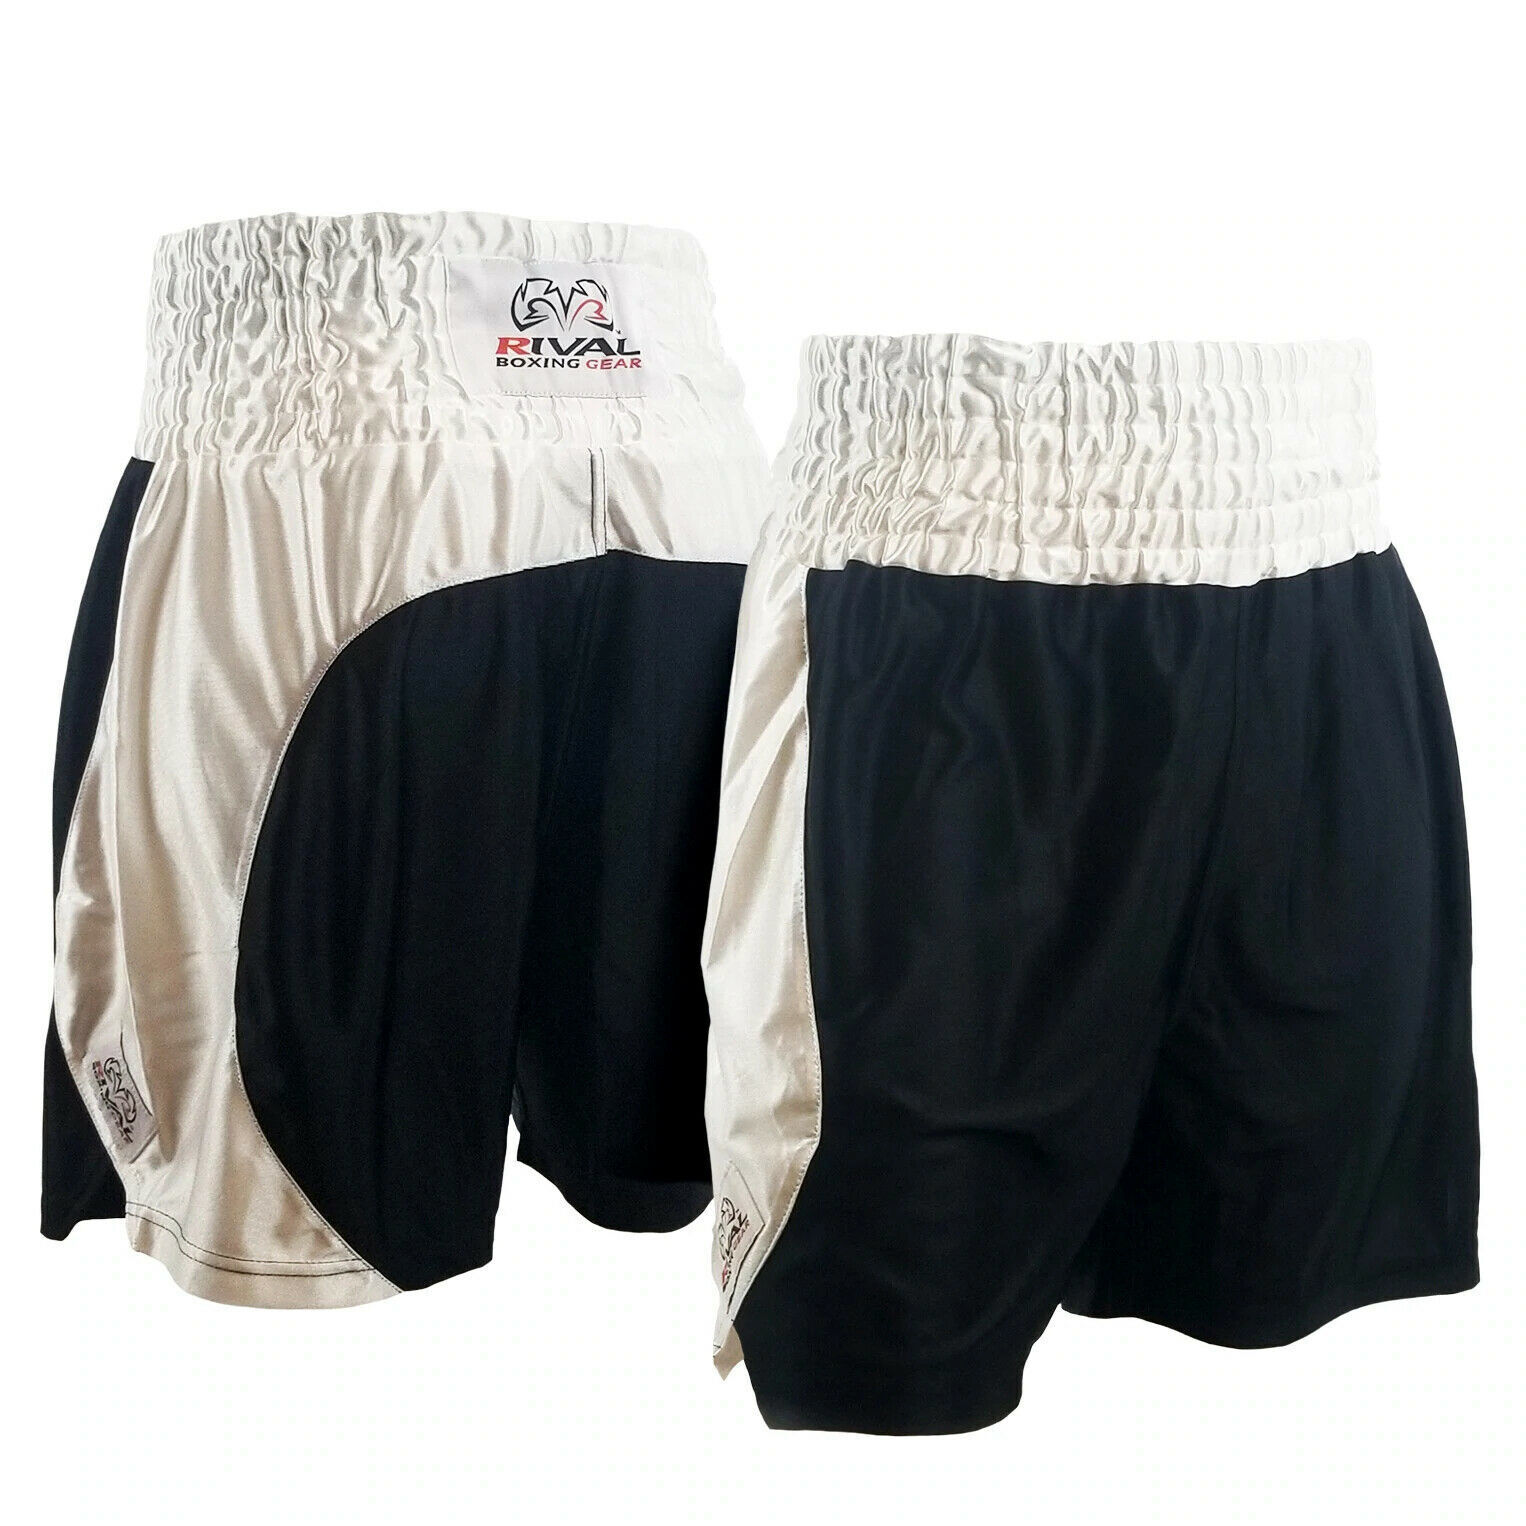 Rival Dazzle Guerrero Boxing Fight Shorts - Black/White - Click Image to Close